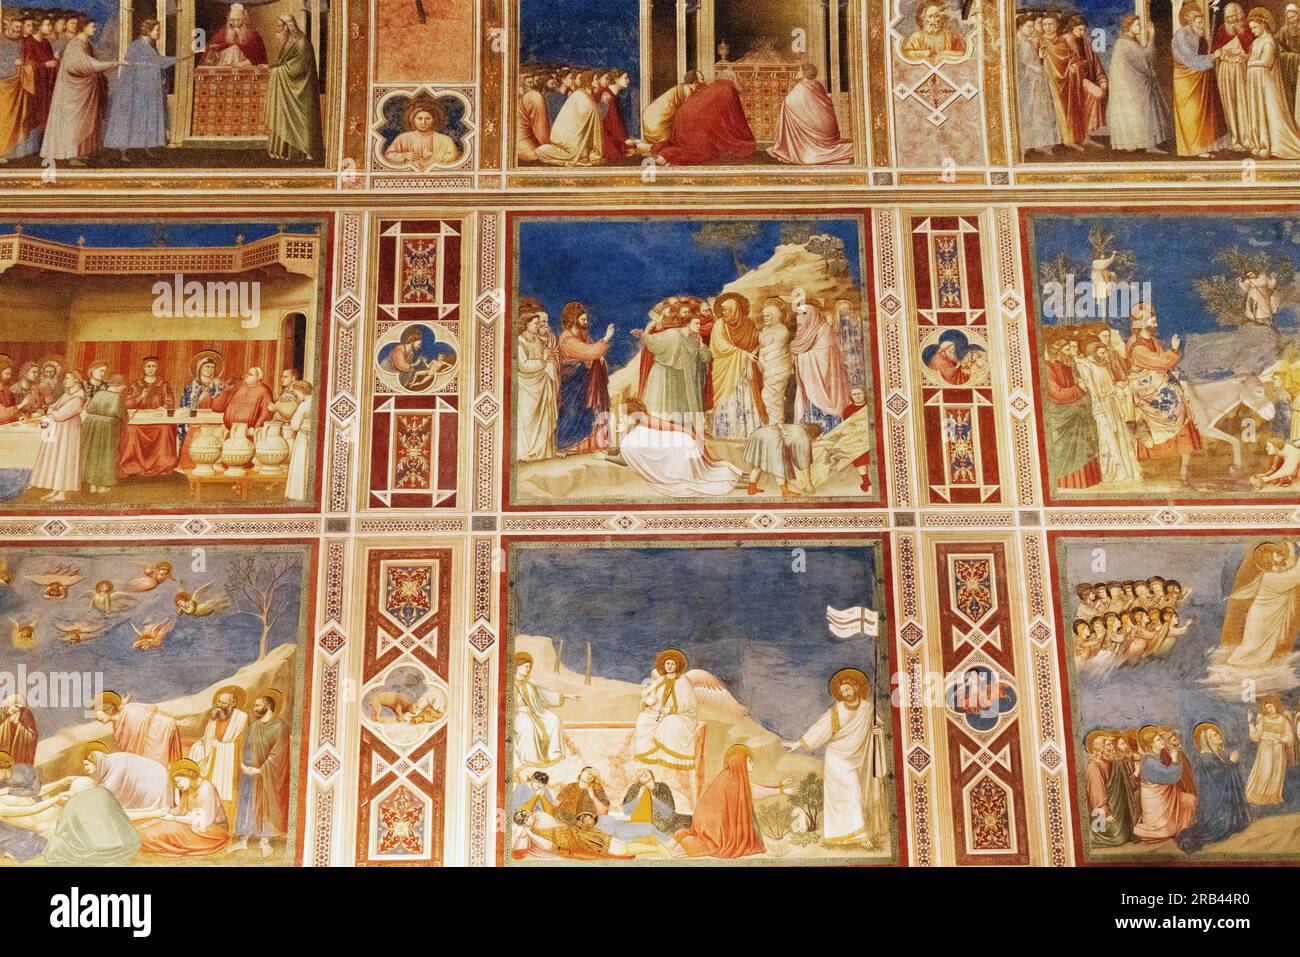 Affreschi di Giotto, Cappella degli Scrovegni, Padova - dipinti rinascimentali italiani del XIV secolo sulla vita di Cristo; Musei Civici di Padova Foto Stock